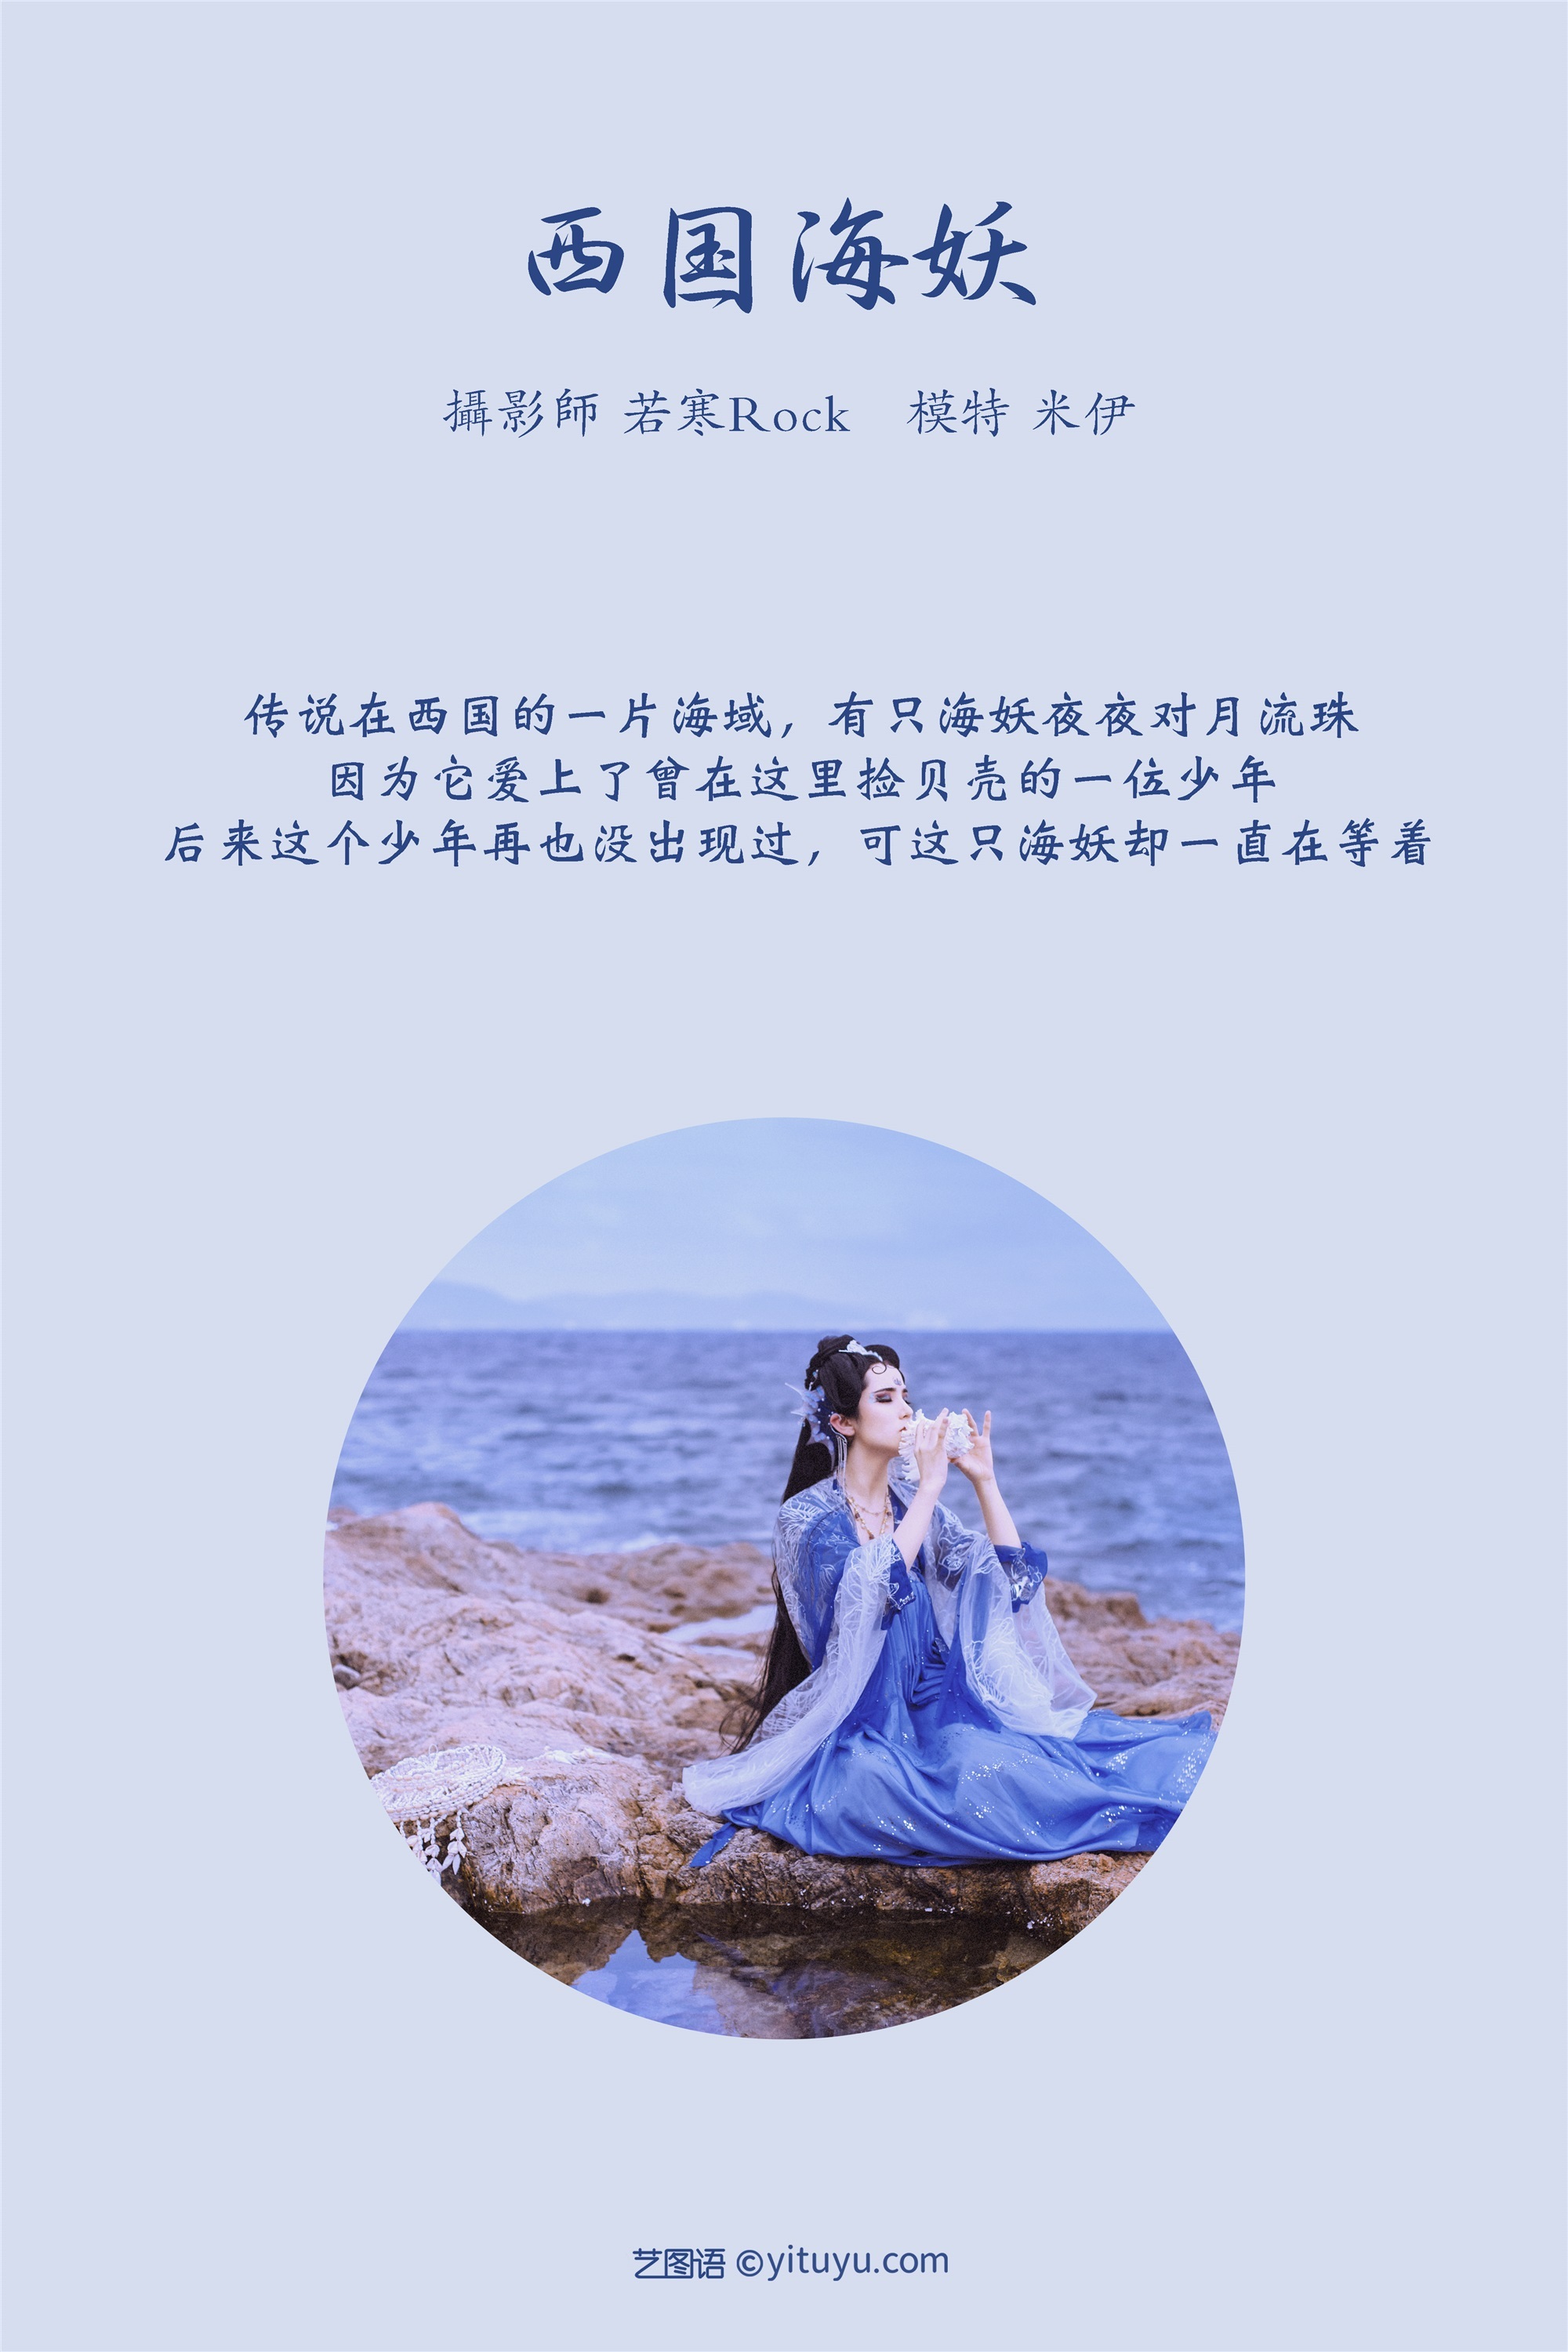 YITUYU Yitu Language 2021.09.02 Xiguo Sea Demon Mi Yi